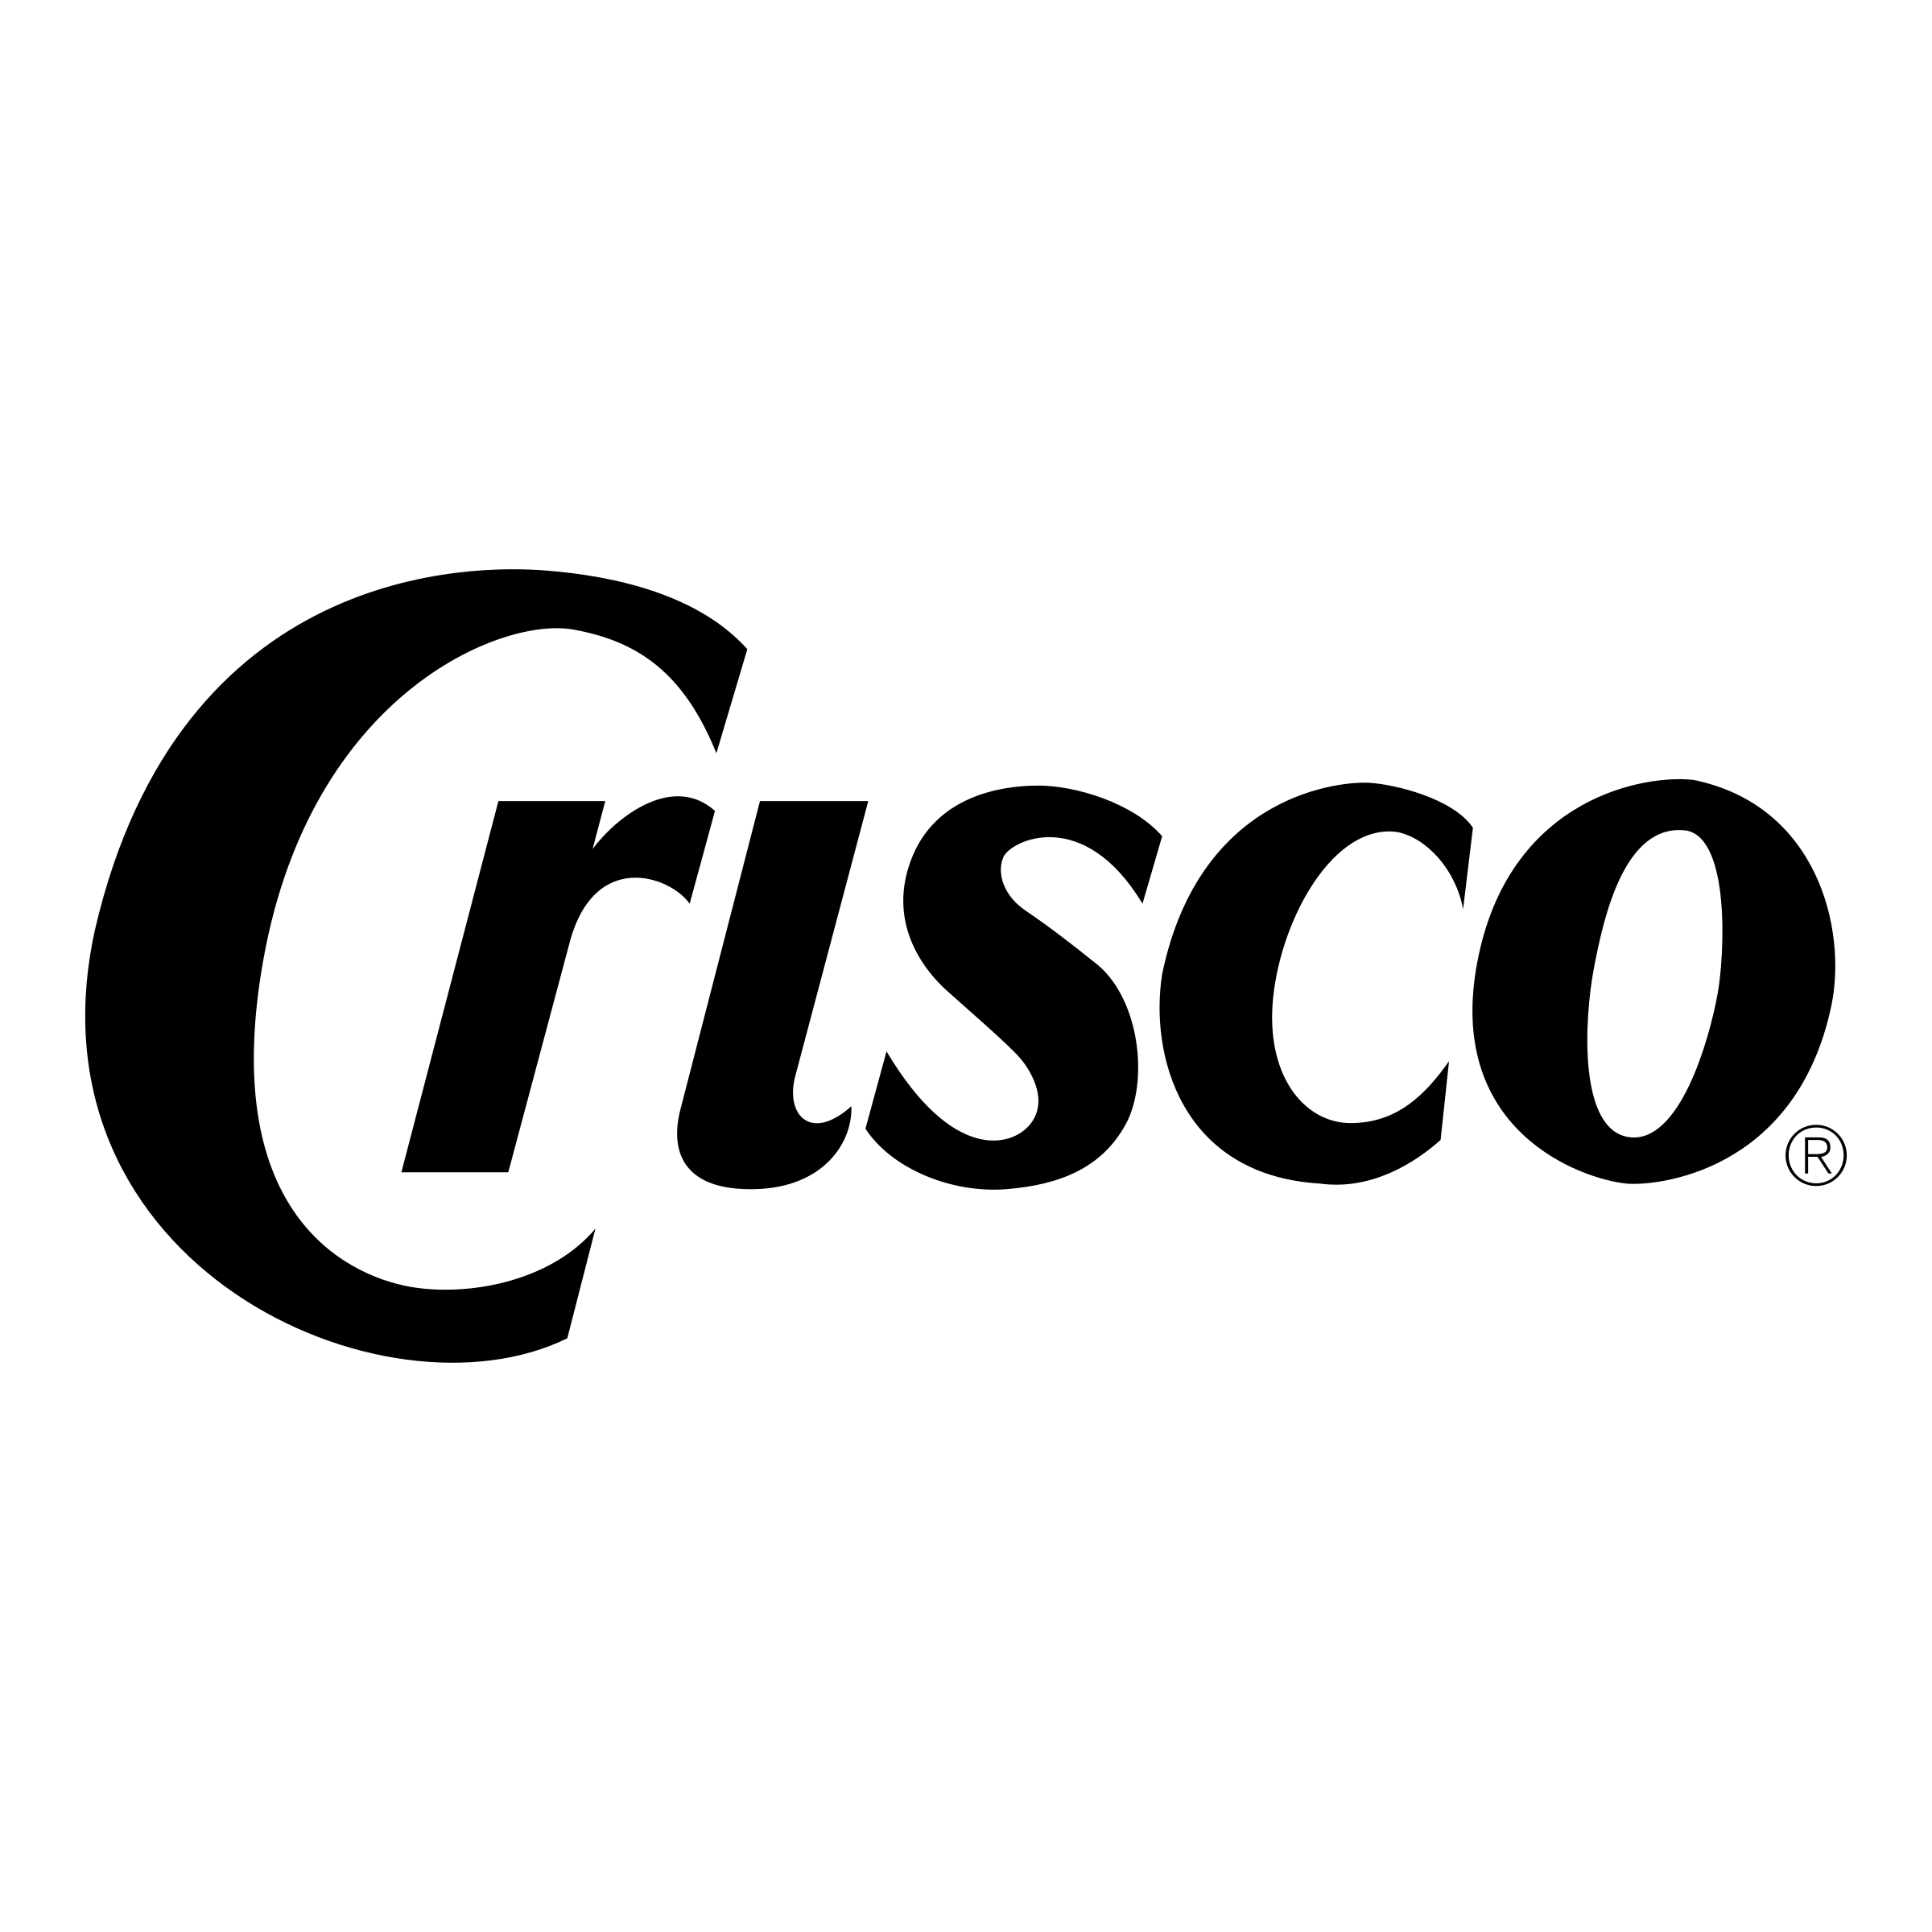 Crisco Logo - Crisco Logo PNG Transparent & SVG Vector - Freebie Supply